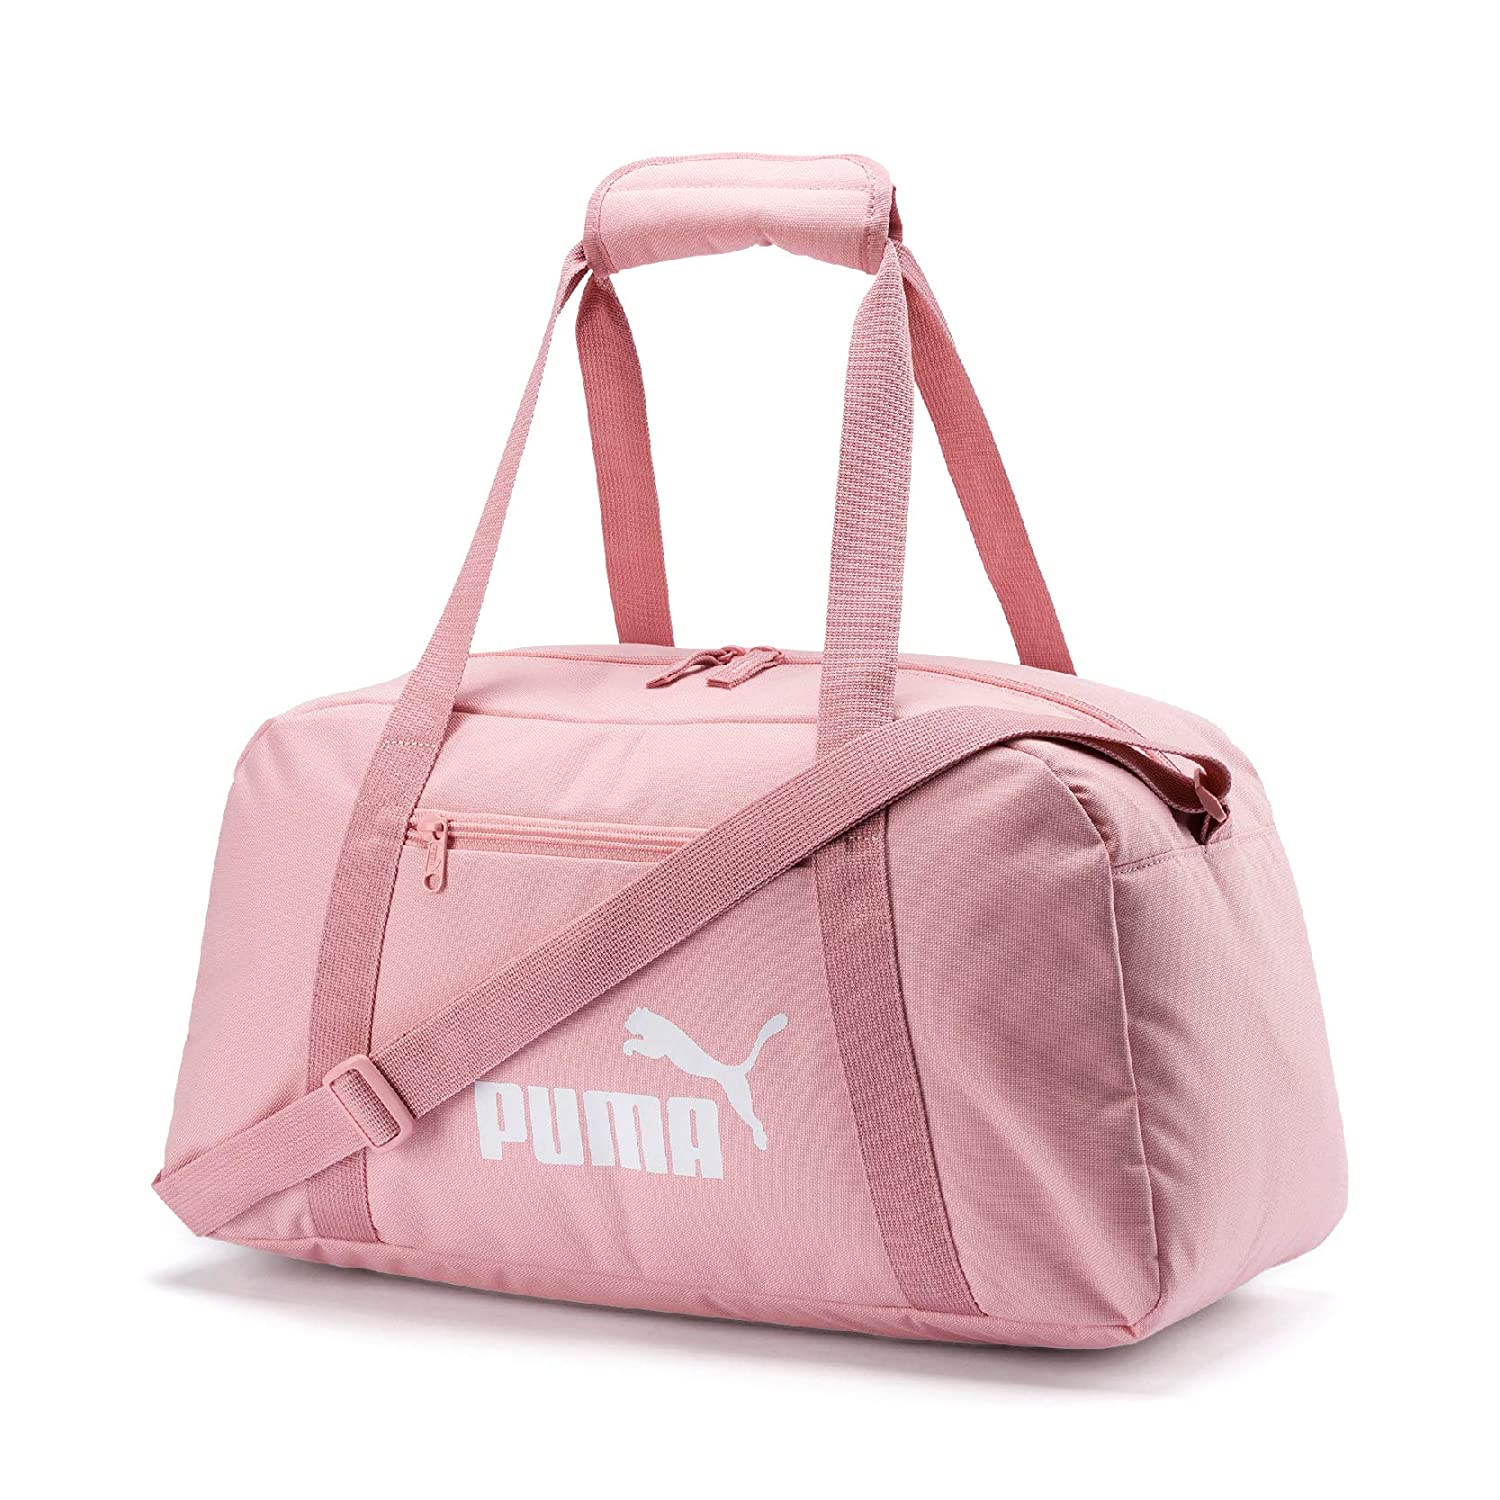 Buy Puma Womens Barrel Gym Bag, Team Light Blue (9101201) at Amazon.in